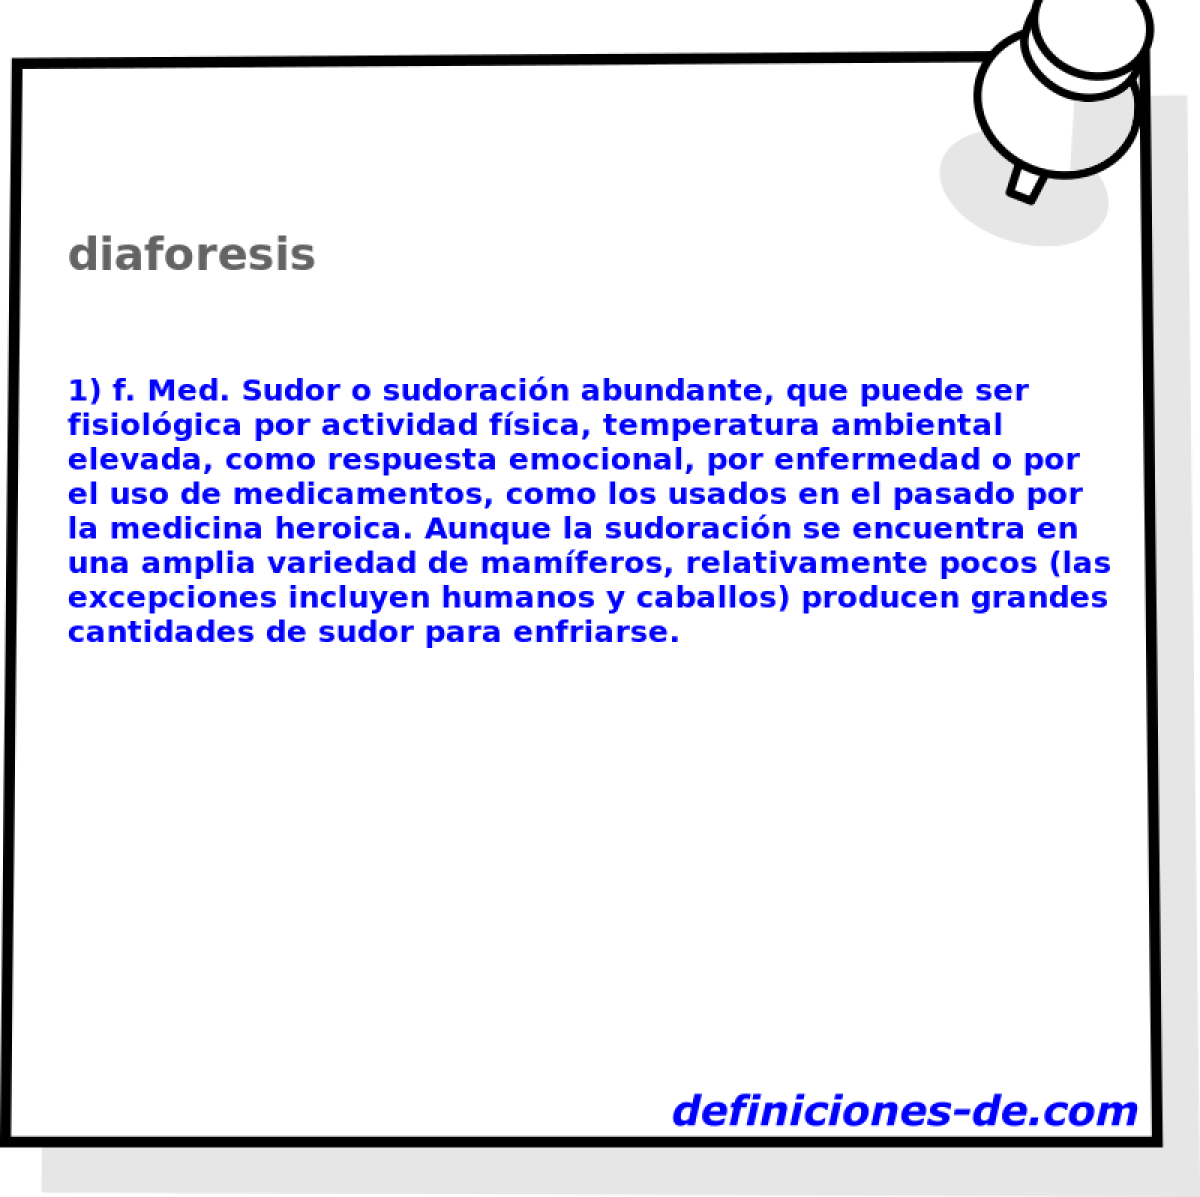 diaforesis 